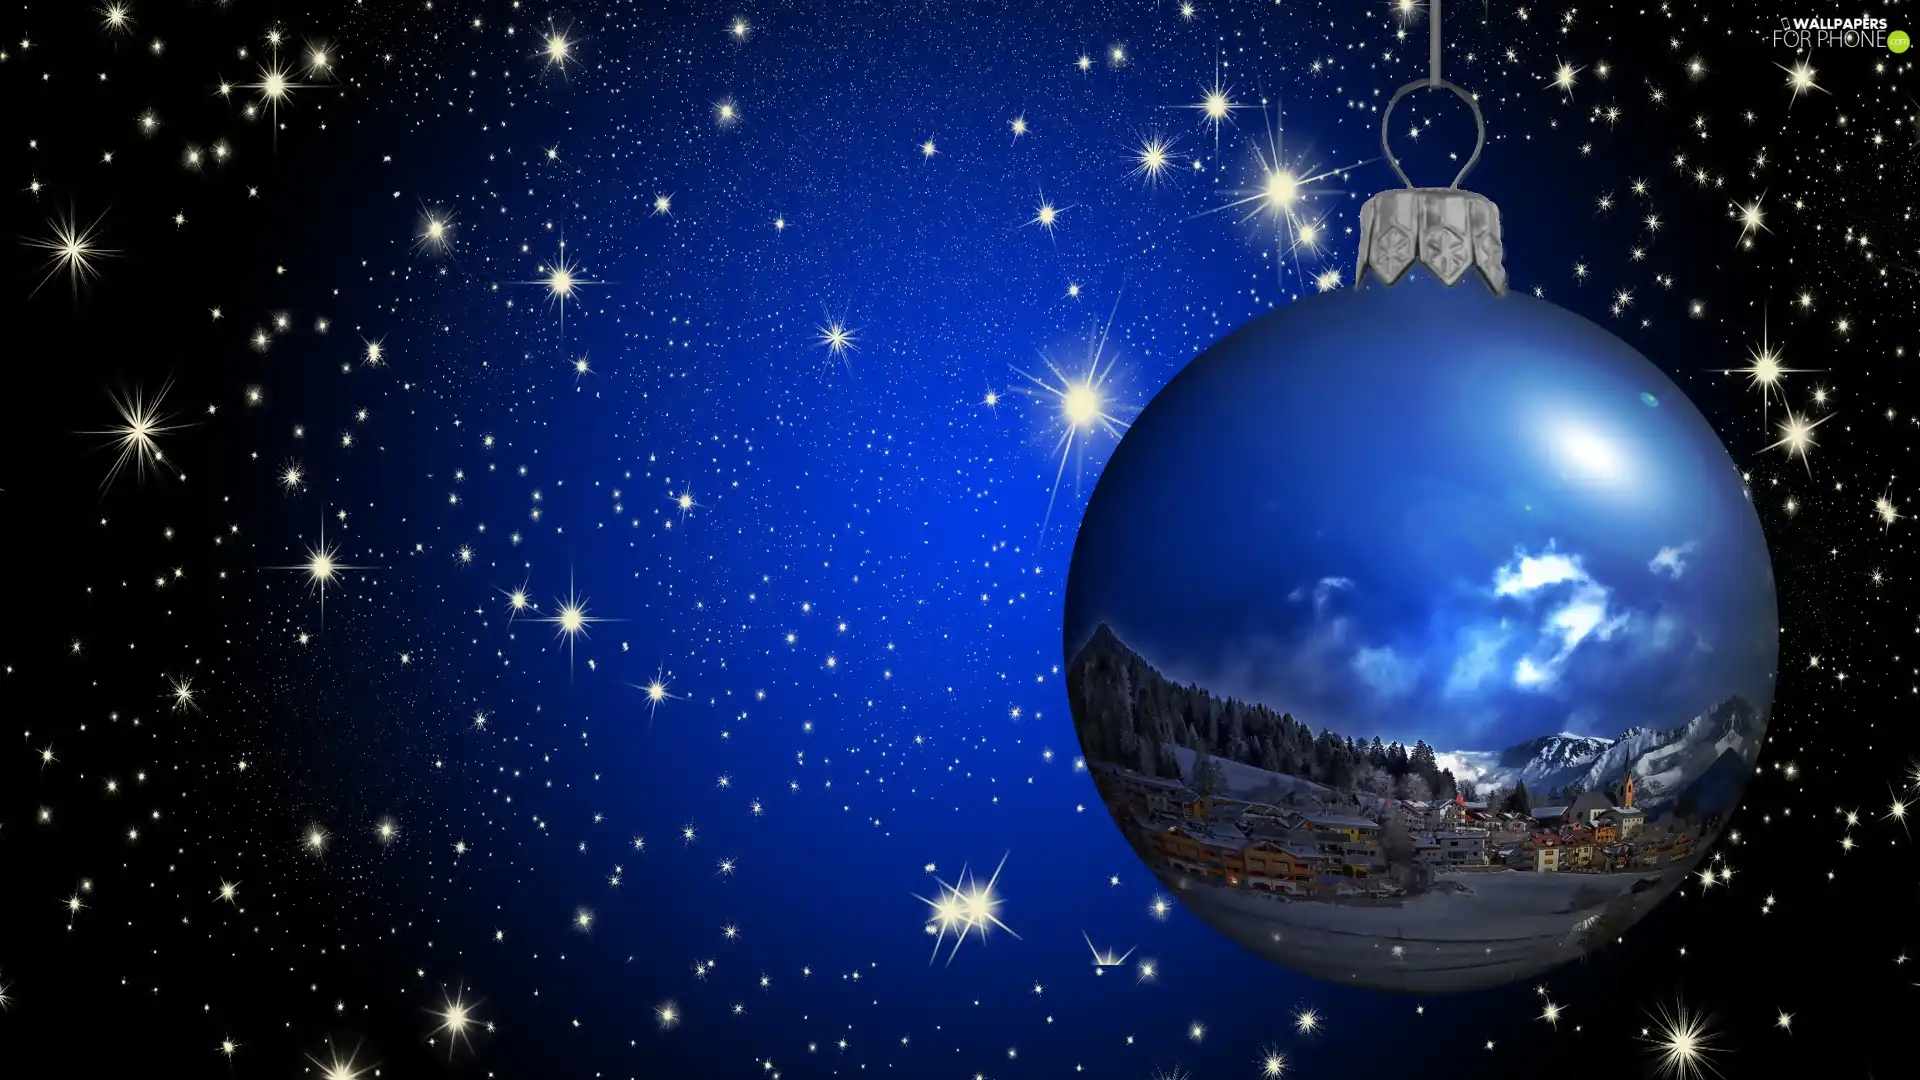 Sky, star, decoration, bauble, Christmas